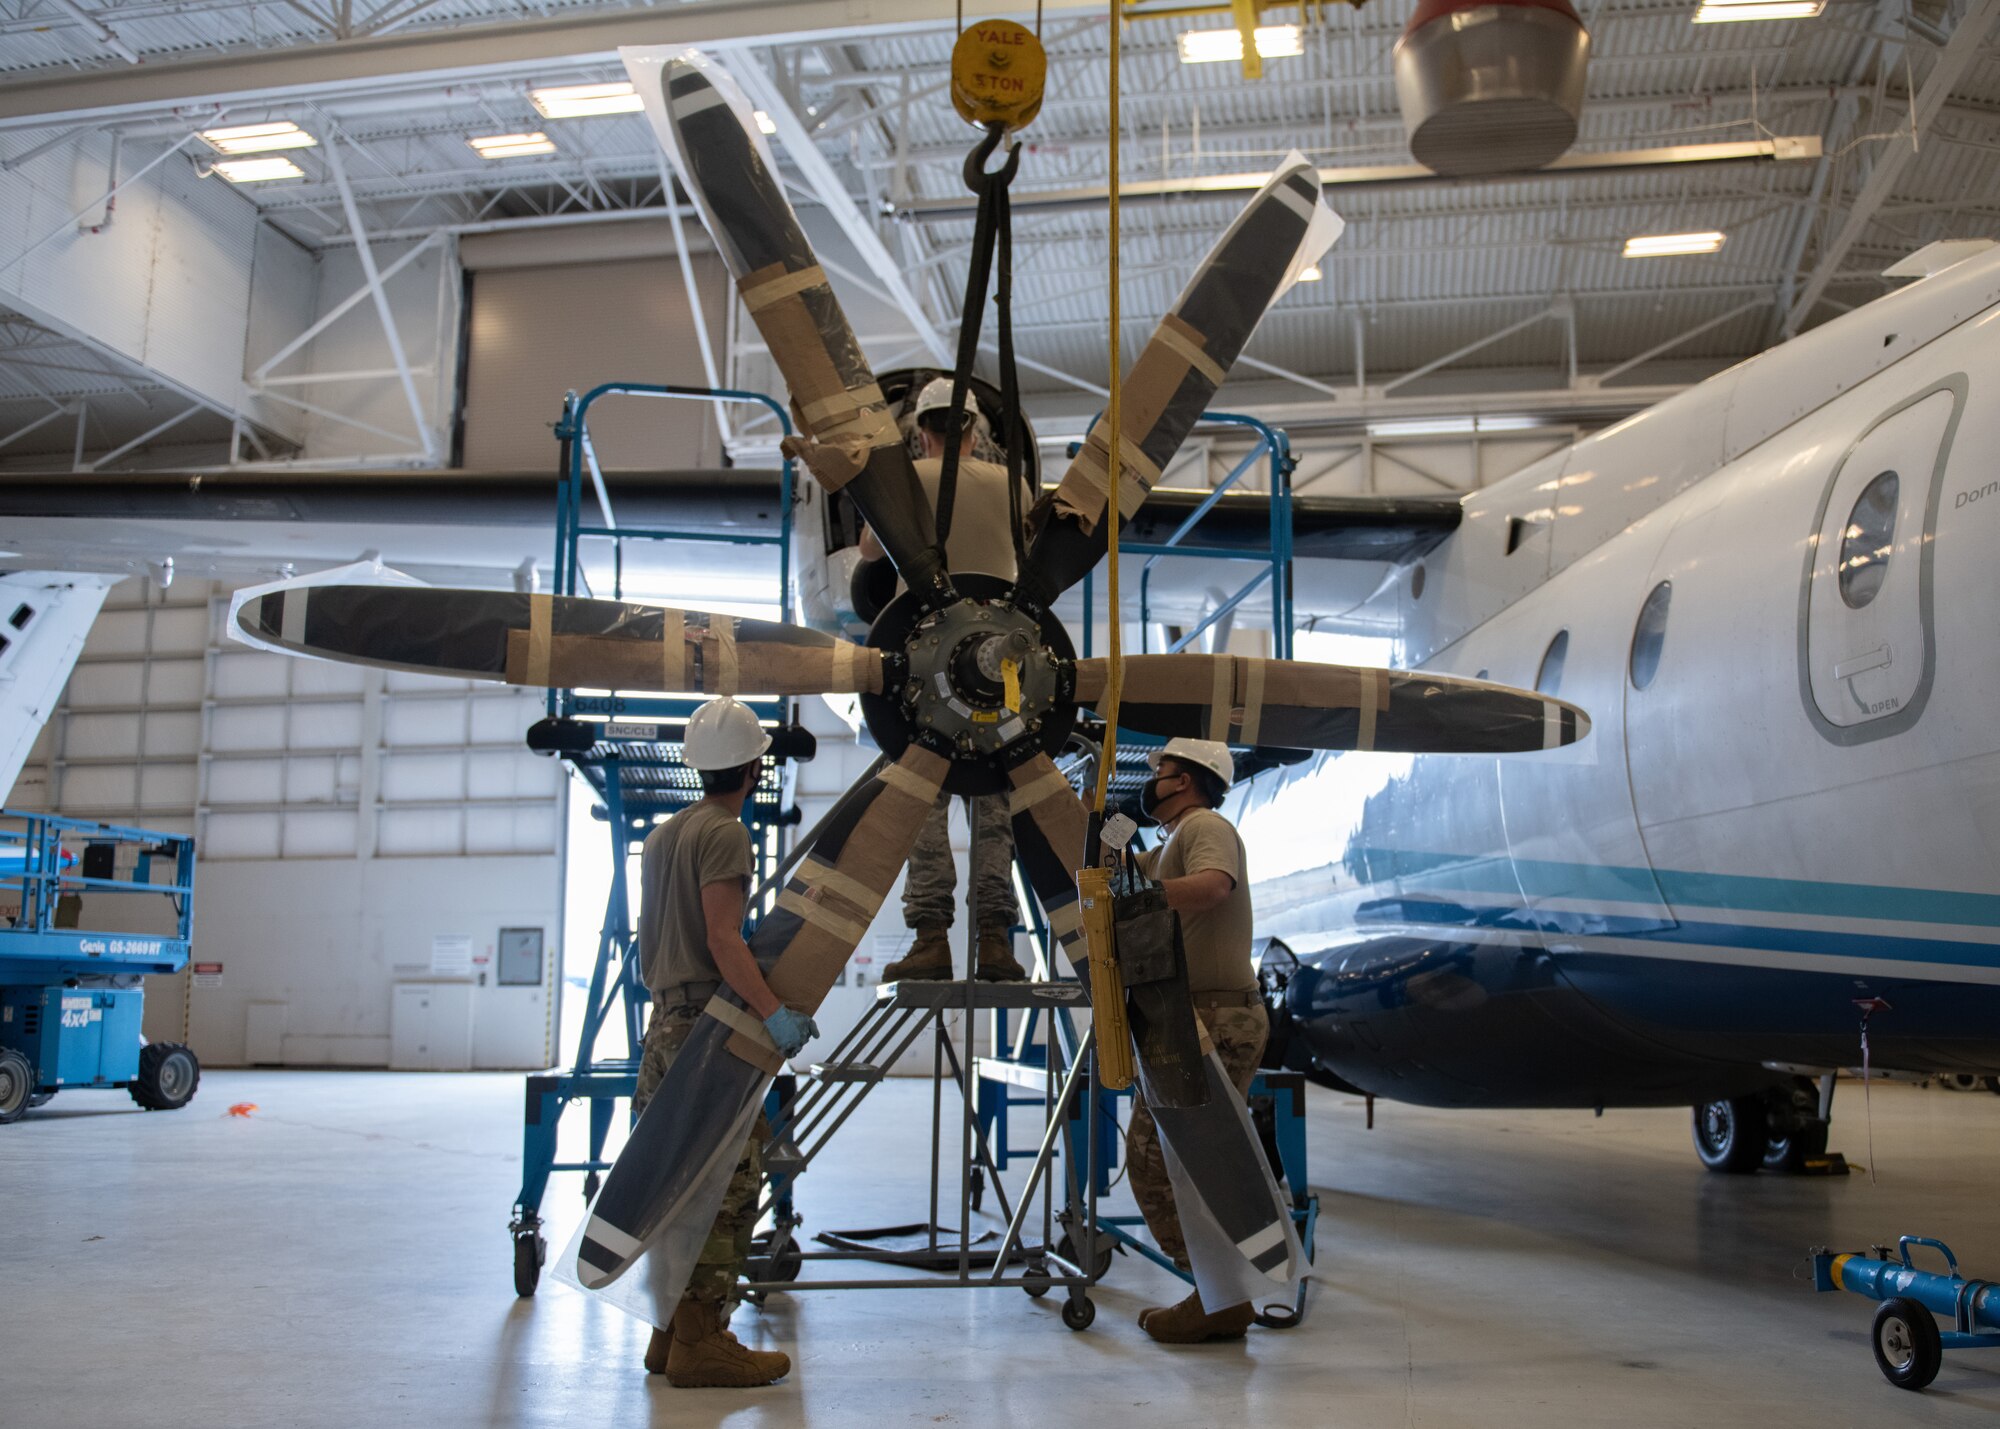 Airmen mount new propeller